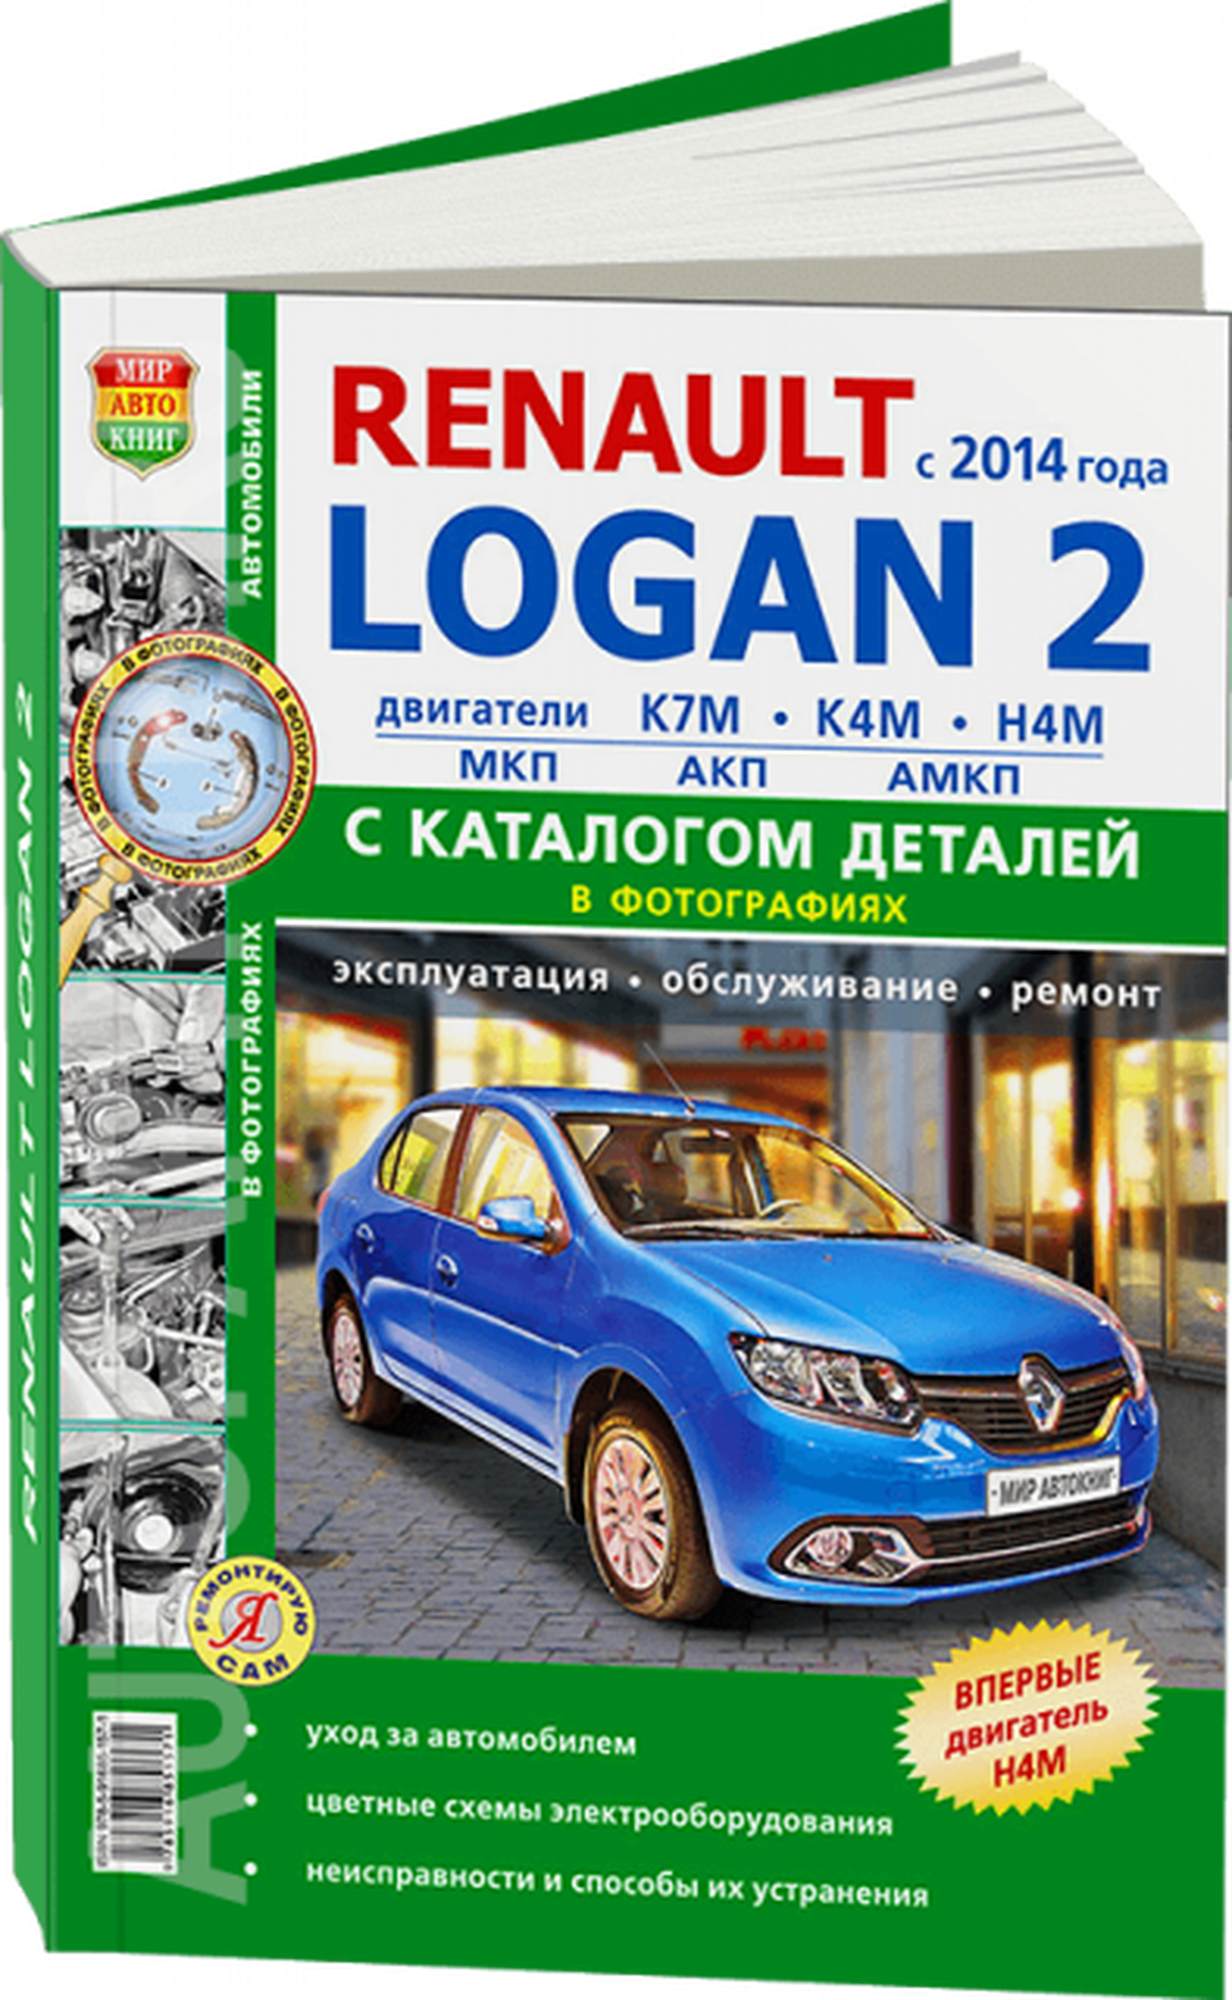 Каталог деталей RENAULT LOGAN 2 (рено логан 2) бензин с 2014 года выпуска, 978-5-91685-157-1, издательство Мир Автокниг